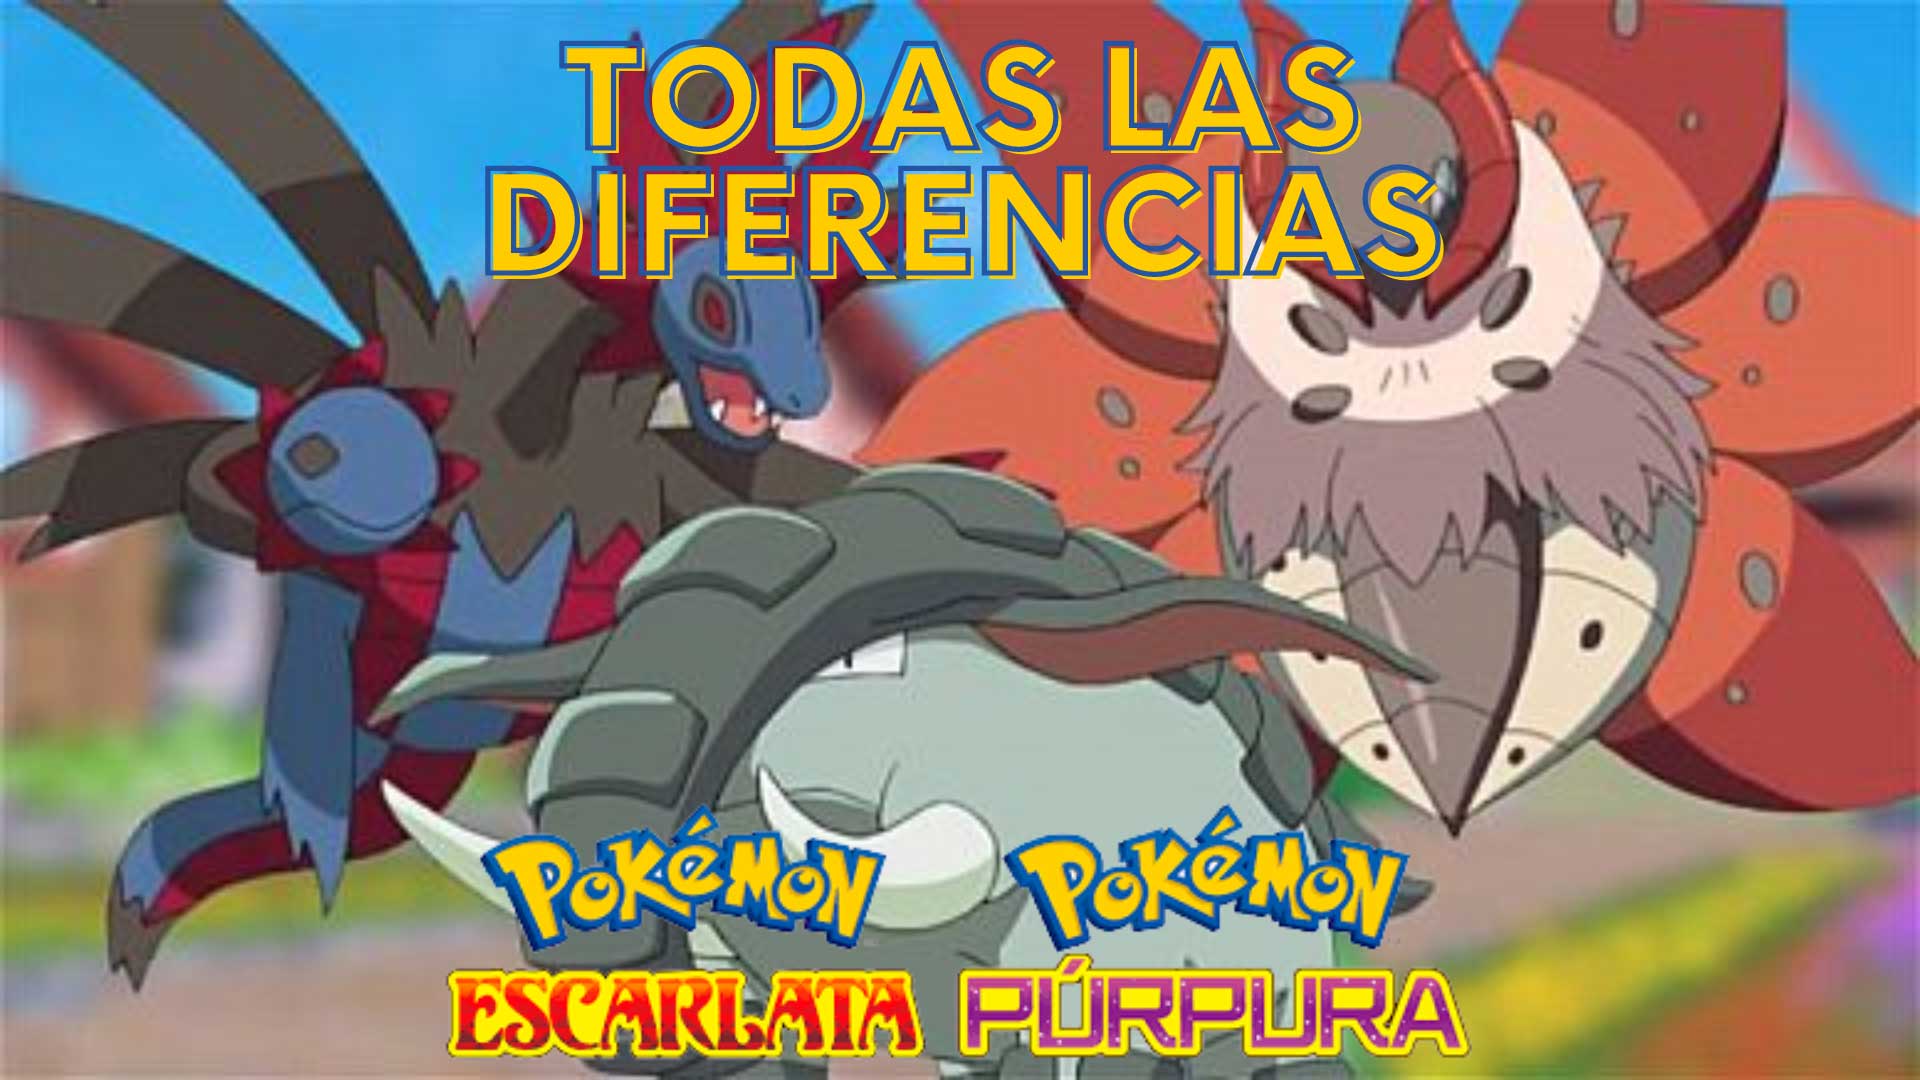 Diferencias y exclusivos de Pokémon Escarlata y Púrpura